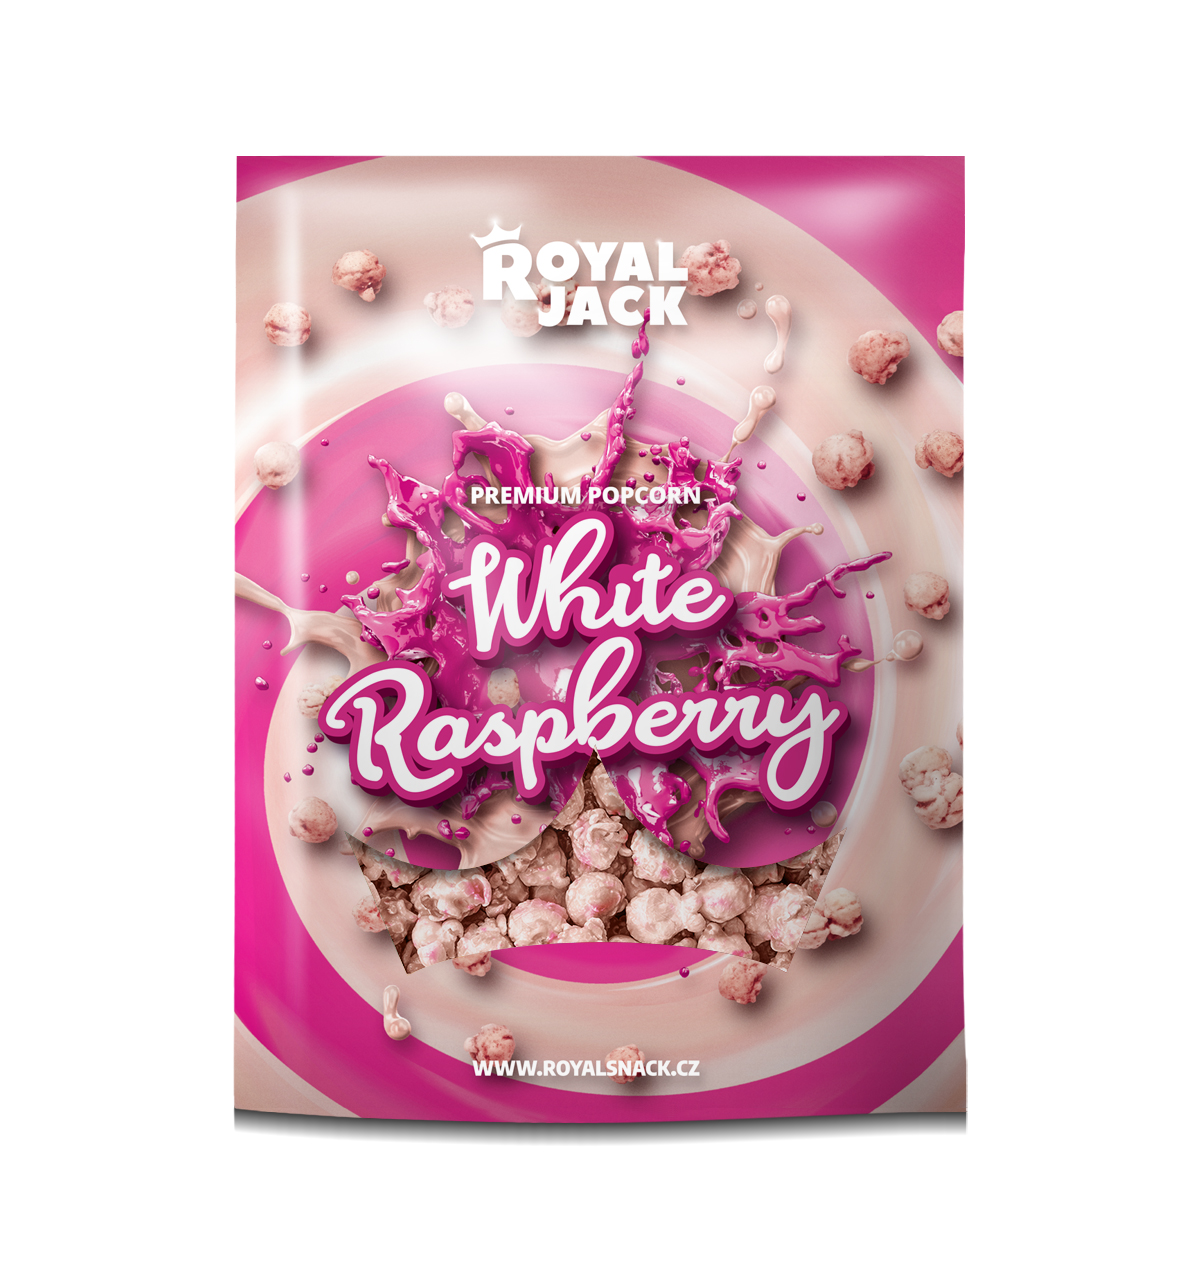 Royal Jack - sladké dobroty Royal Jack - White Raspberry (popcorn v bílé čokoládě s malinovým prachem)